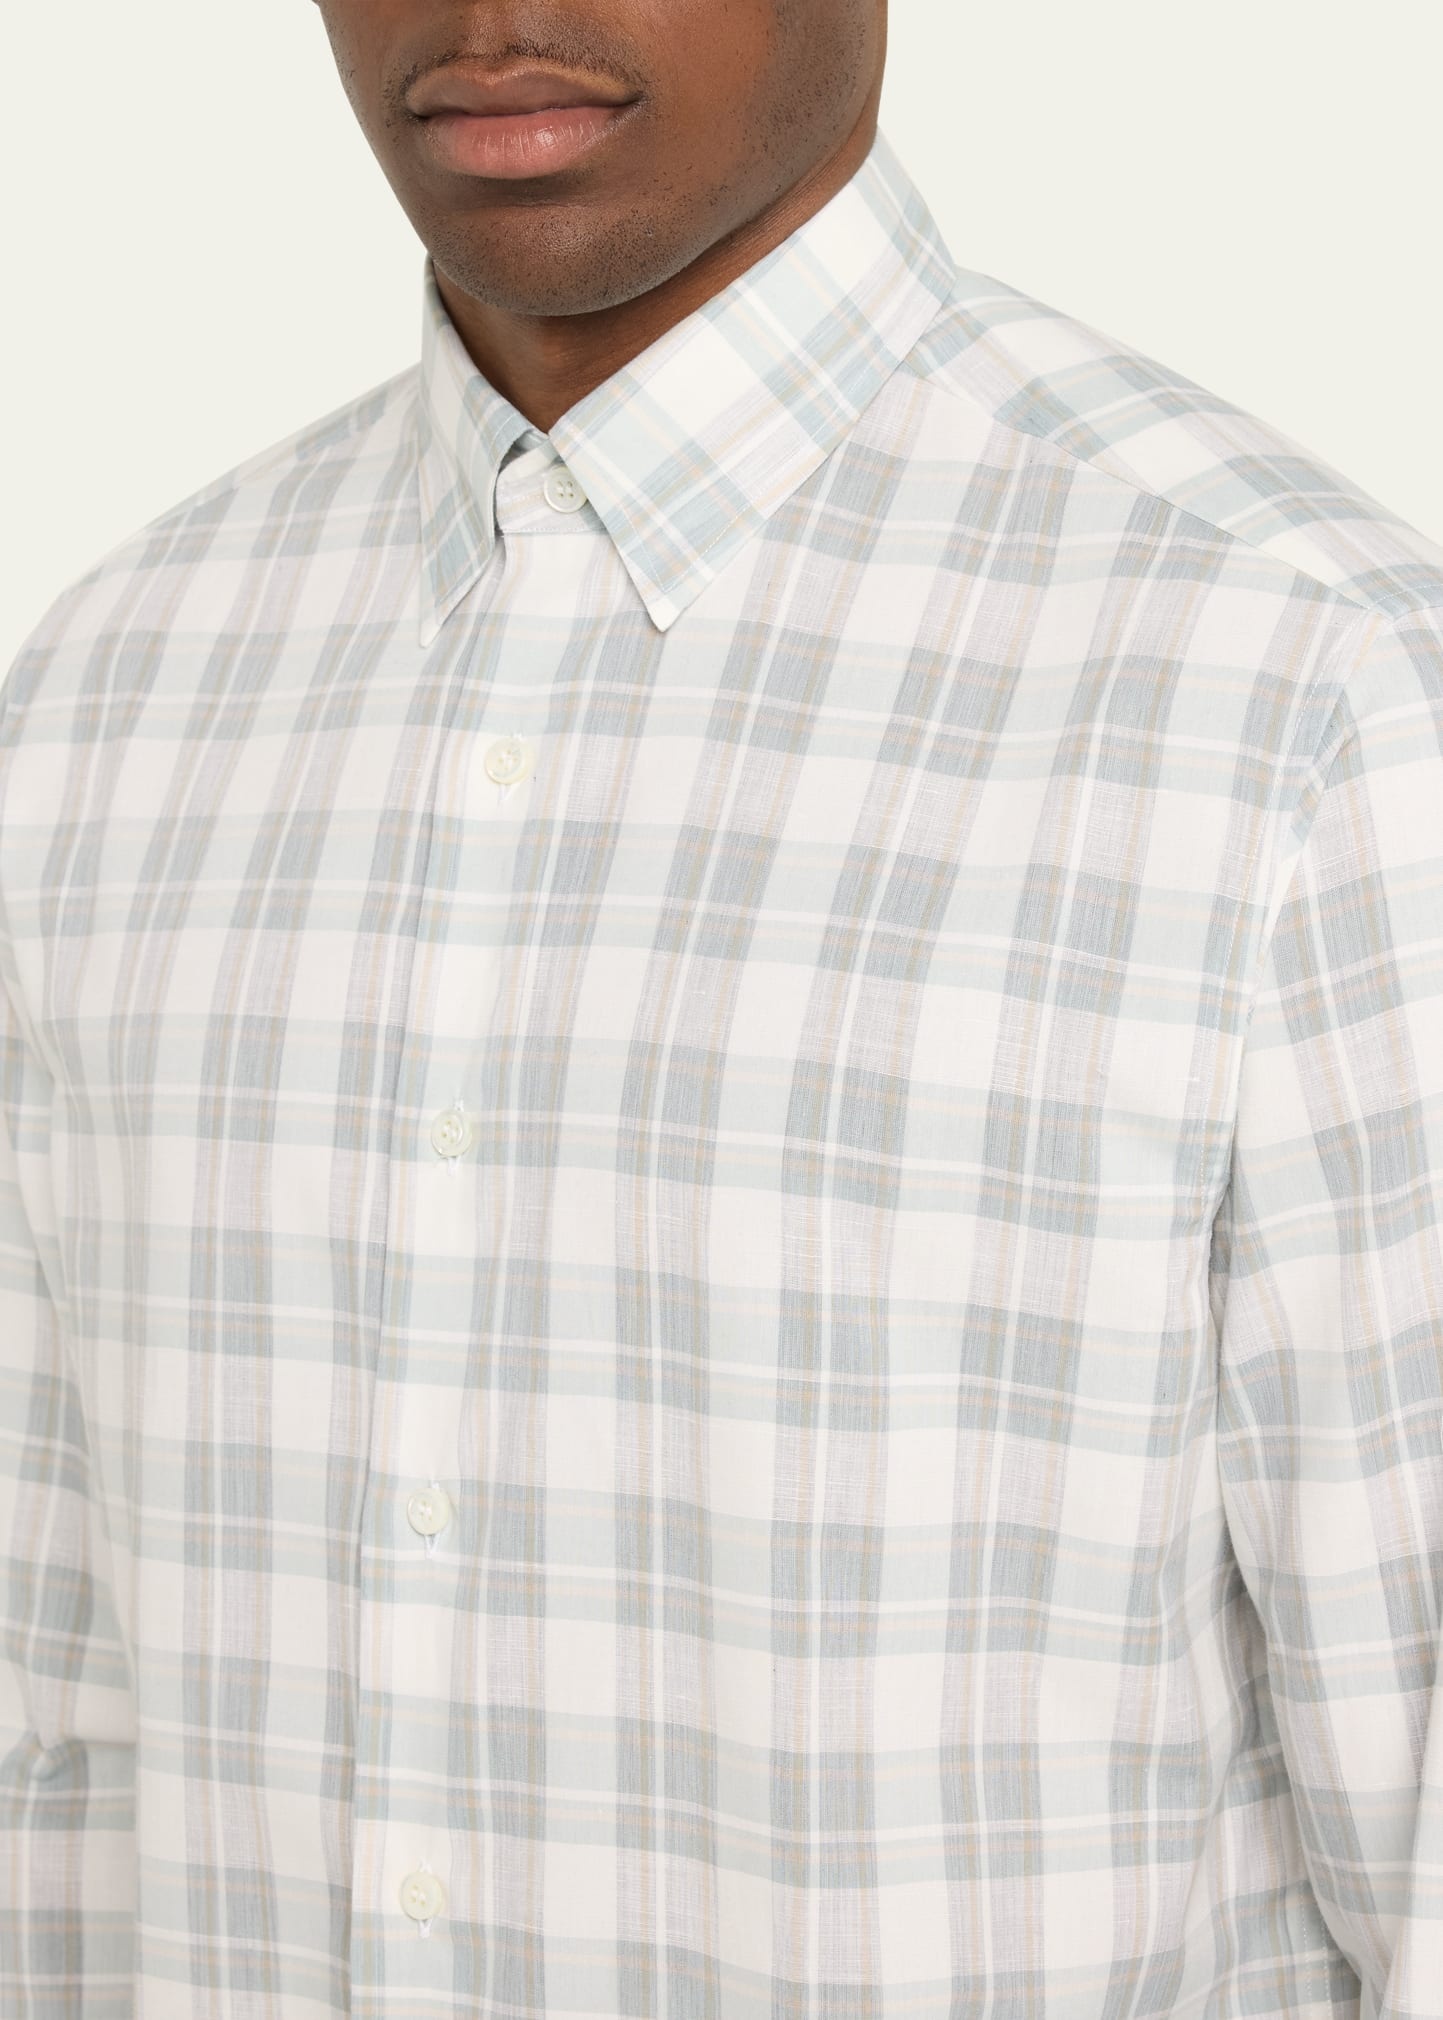 Men's Cotton-Linen Plaid Sport Shirt - 5